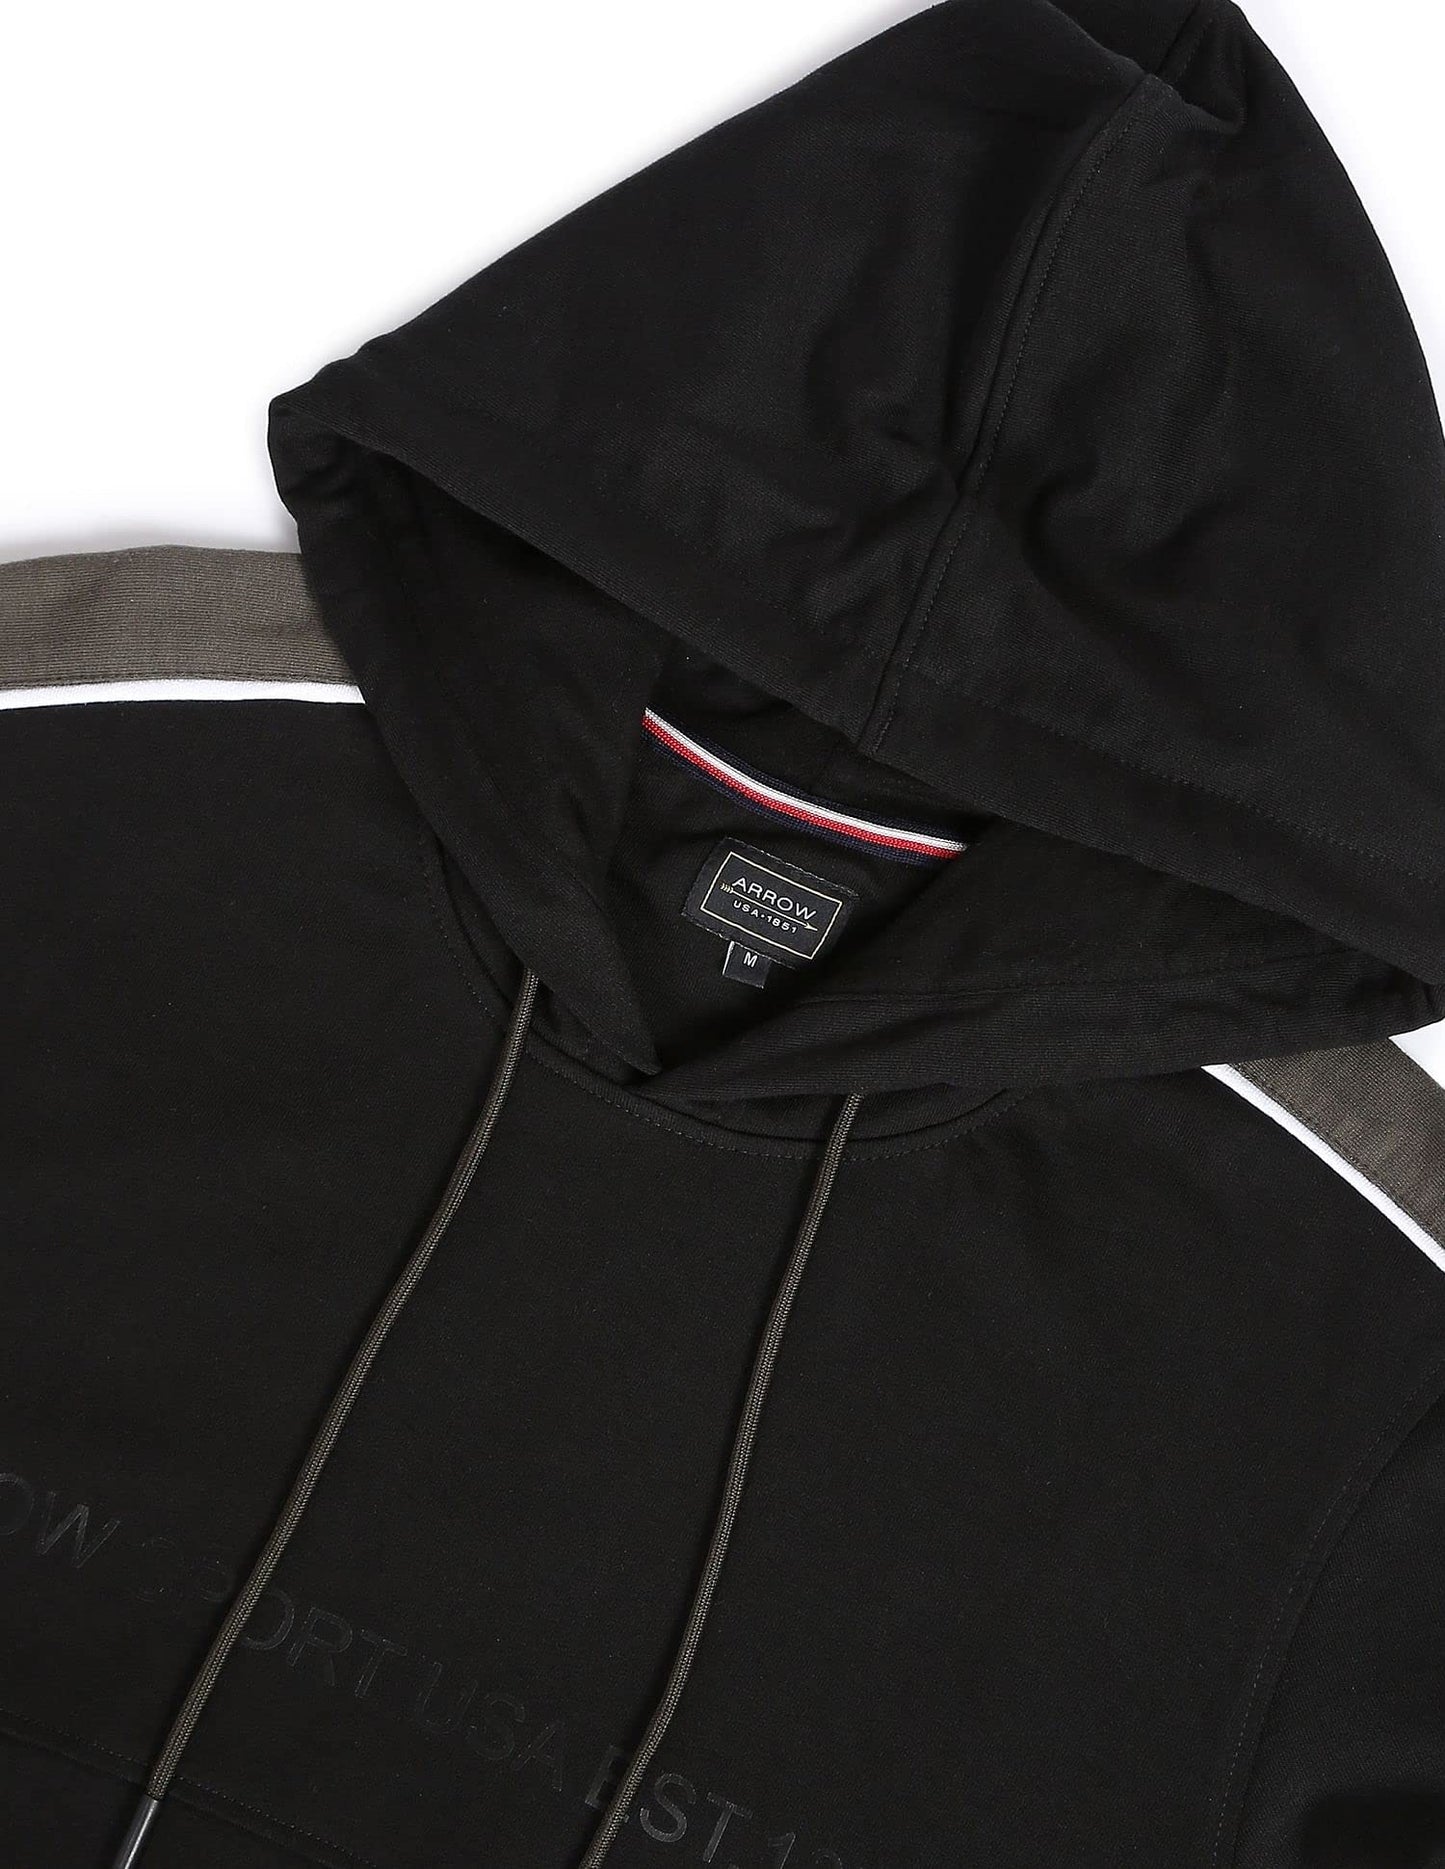 Arrow Men's Cotton Hooded Neck Sweatshirt (Black) 